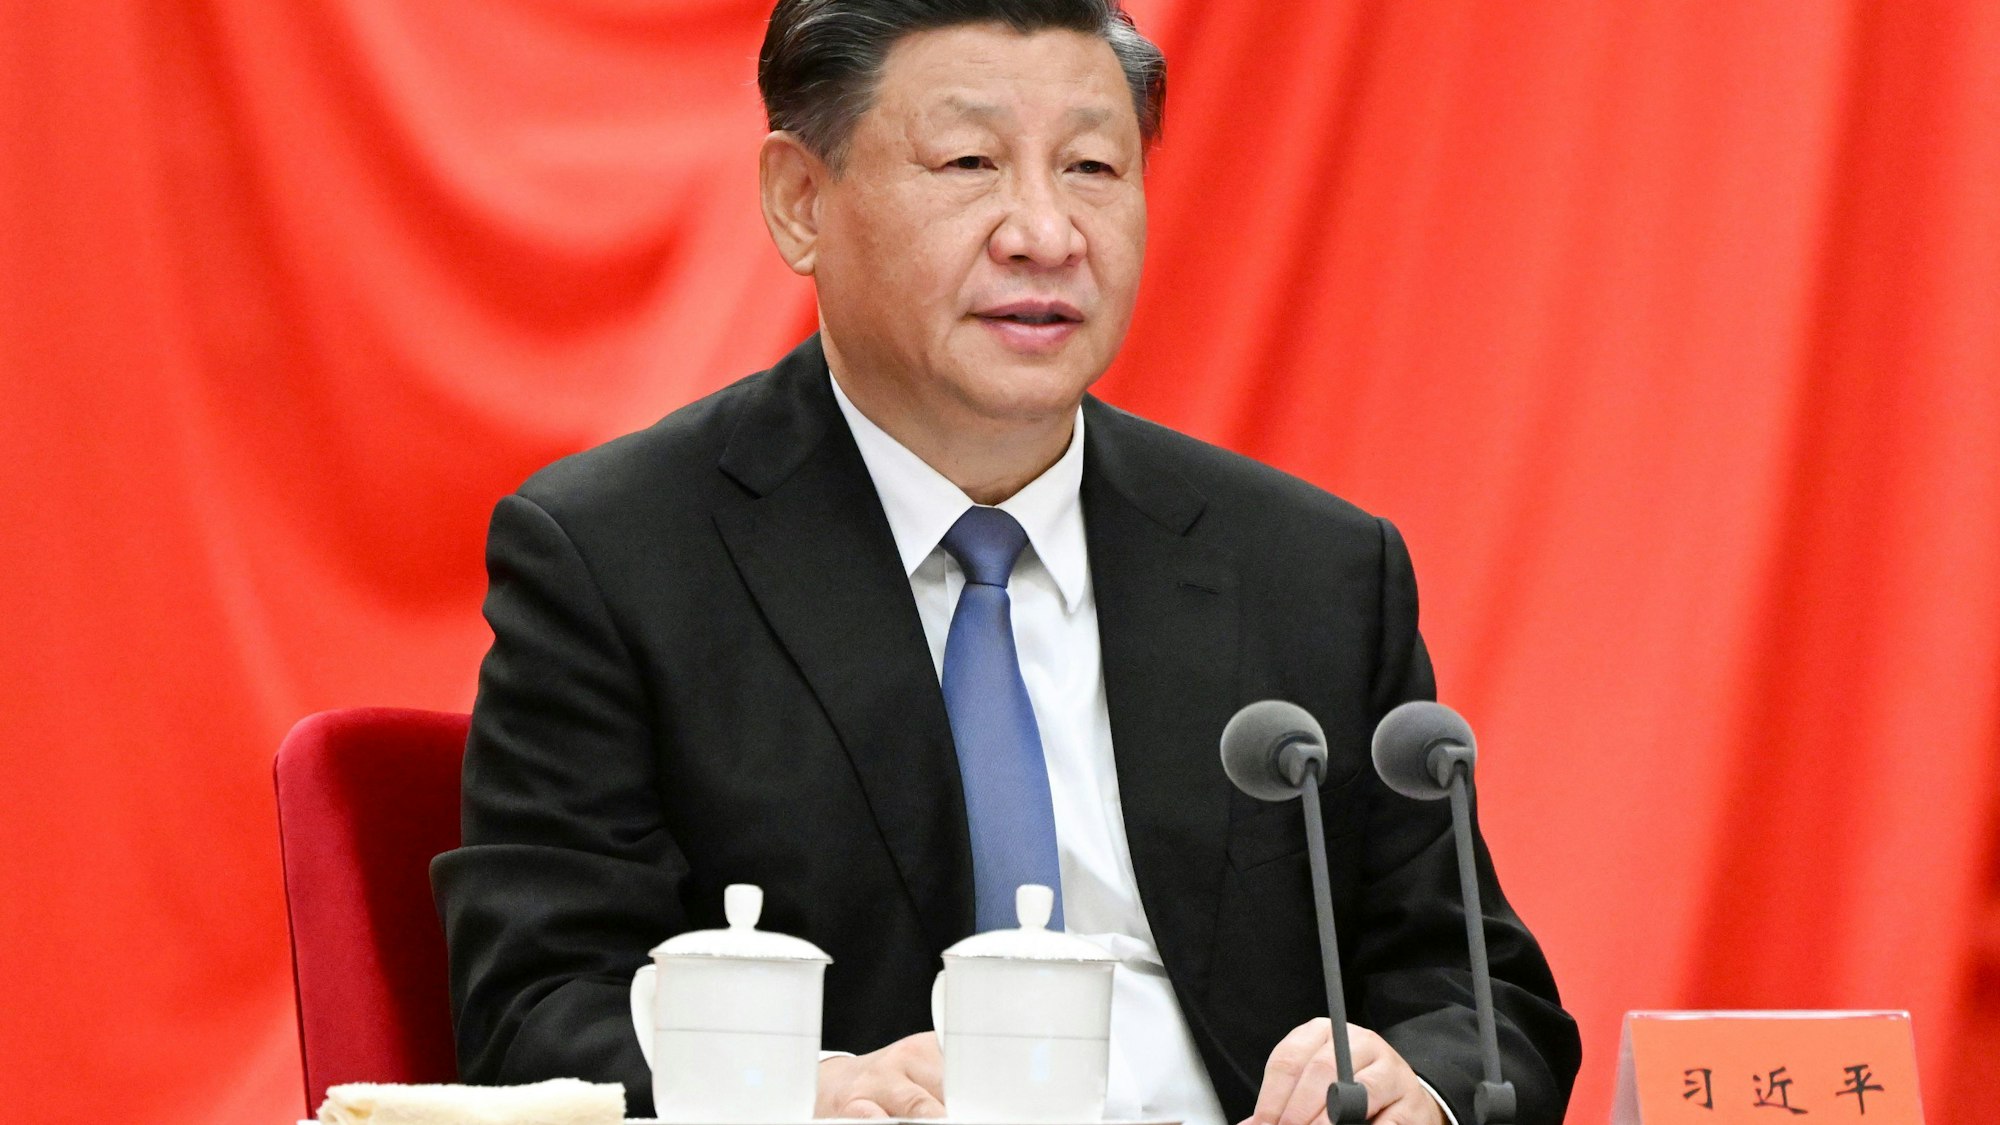 Xi Jinping, Staatspräsident und Vorsitzender der Zentralen Militärkommission von China